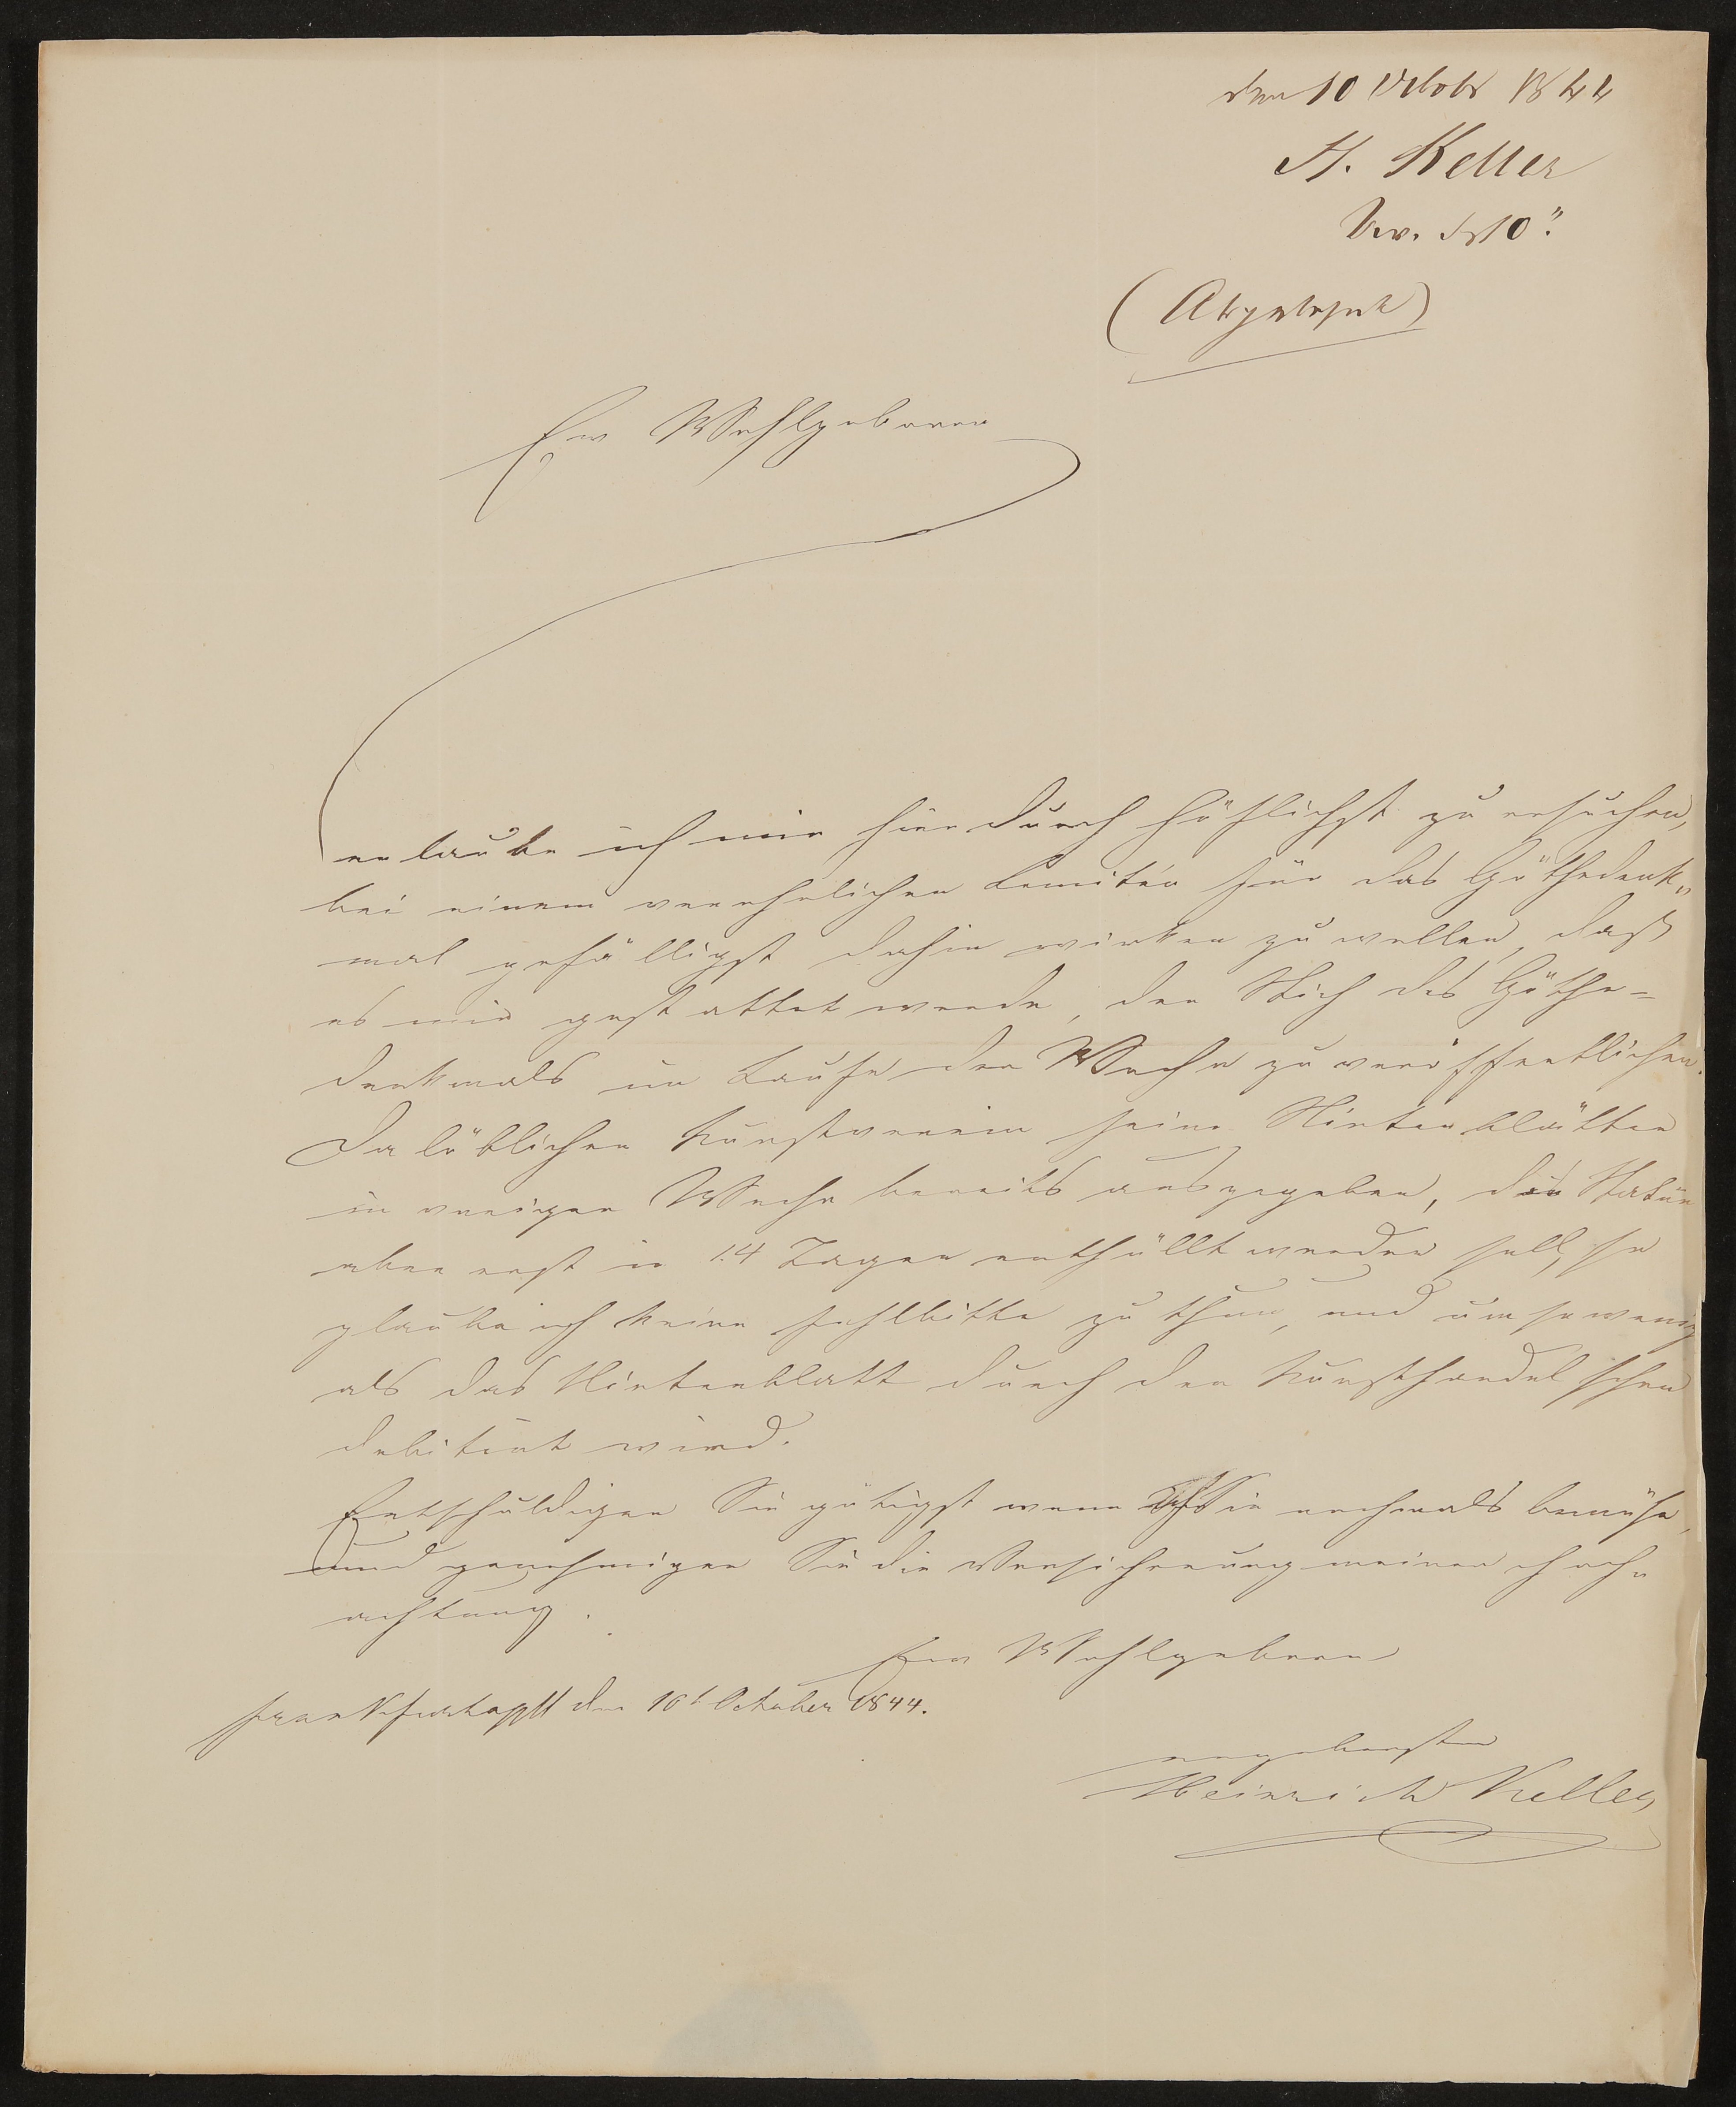 Brief von Heinrich Keller an Friedrich John vom 10.10.1844 (Freies Deutsches Hochstift / Frankfurter Goethe-Museum Public Domain Mark)